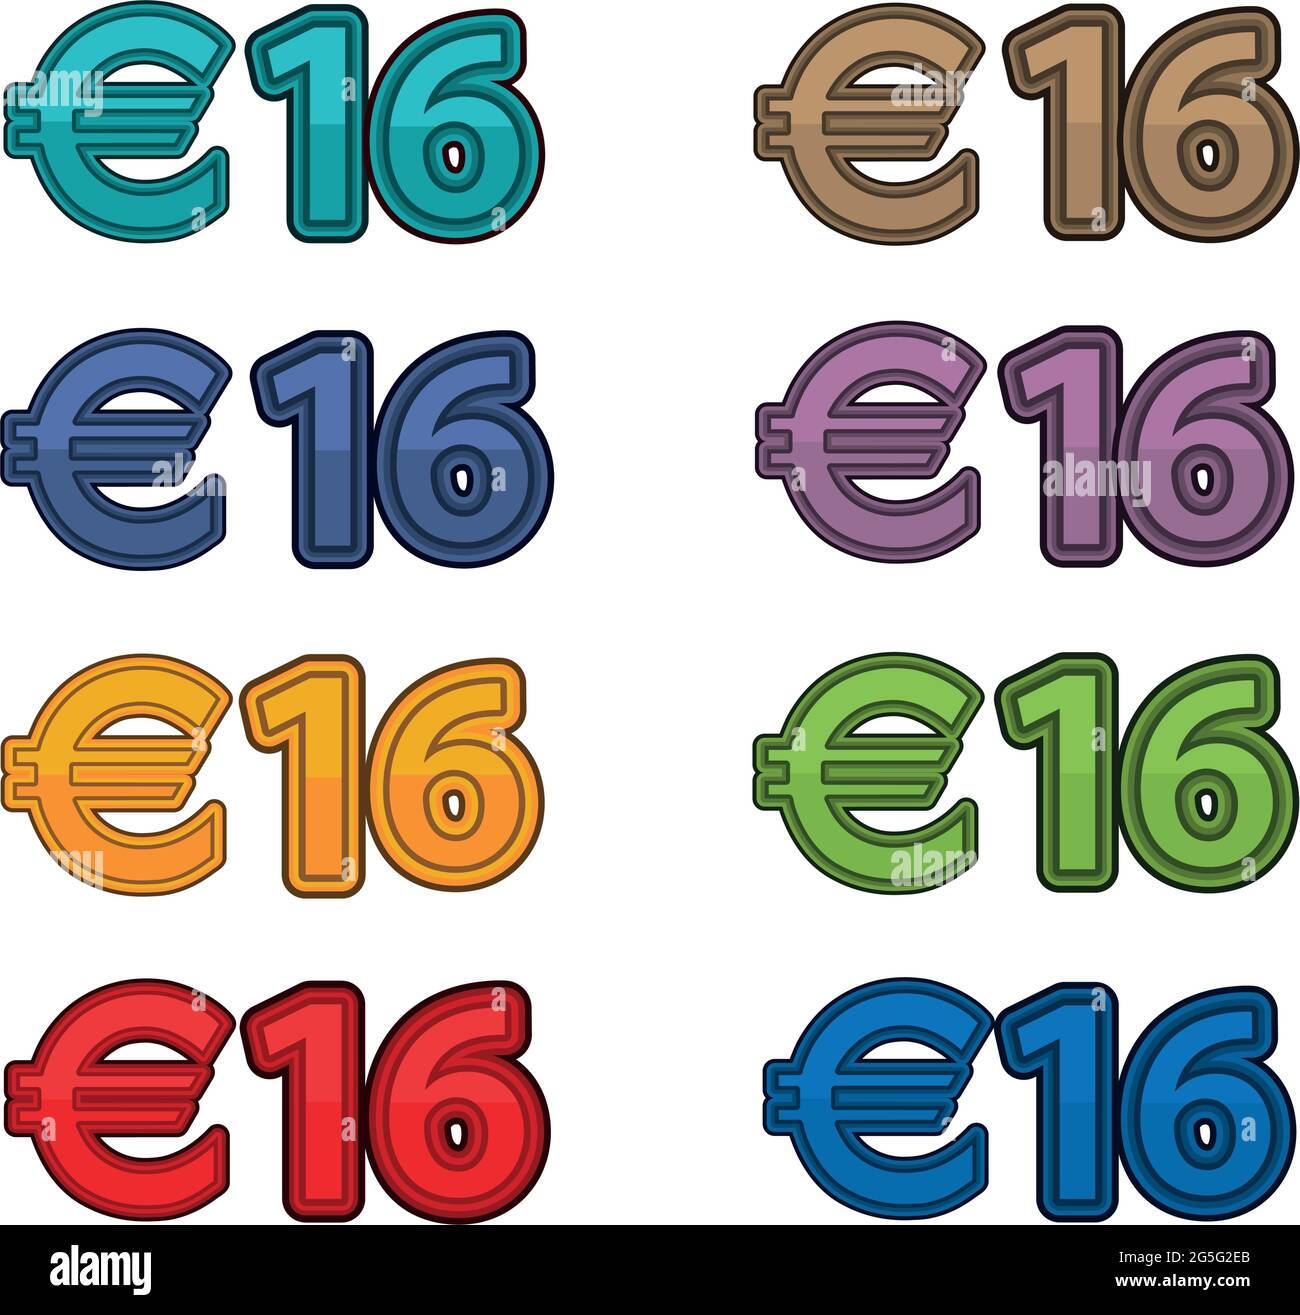 Illustrazione vettore del prezzo 16 euro, valuta europea Illustrazione Vettoriale